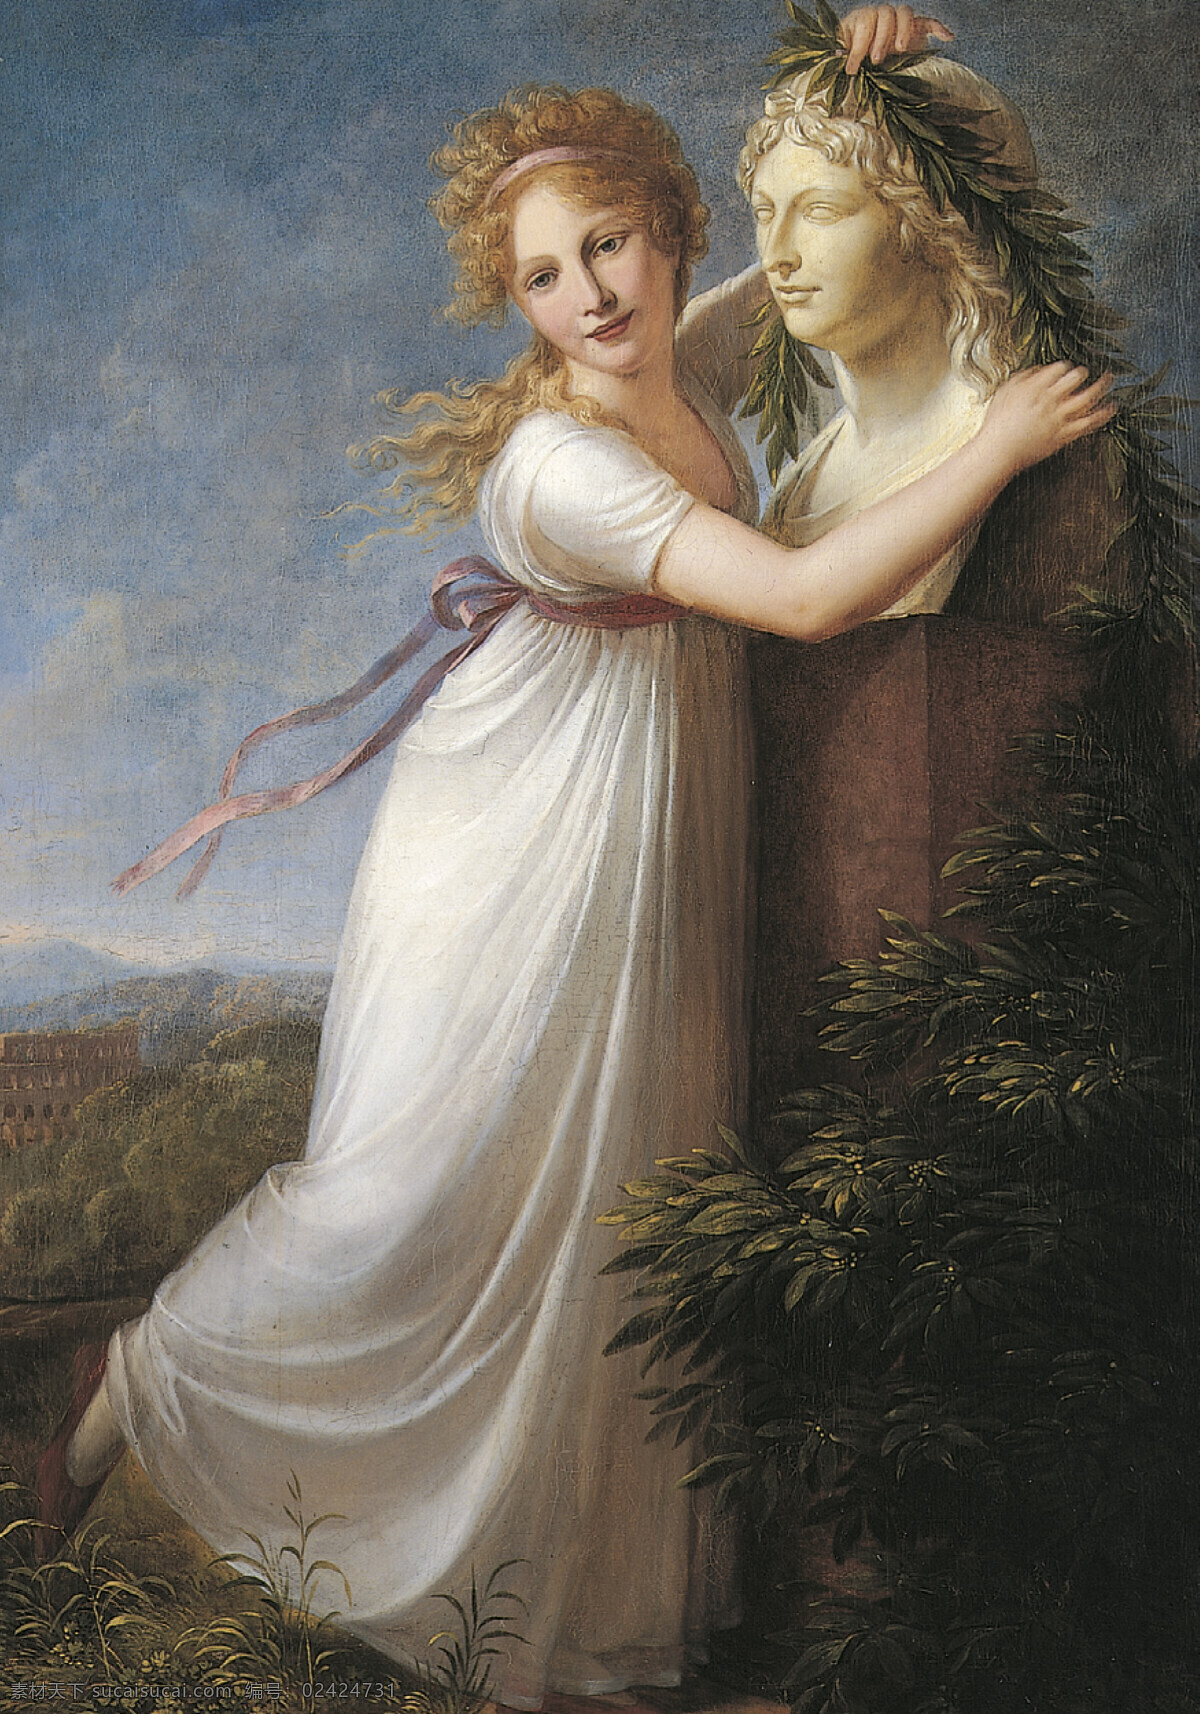 少女艾达布朗 年轻少女 母亲的肖像 白色连衣裙 橄榄枝 19世纪油画 油画 文化艺术 绘画书法